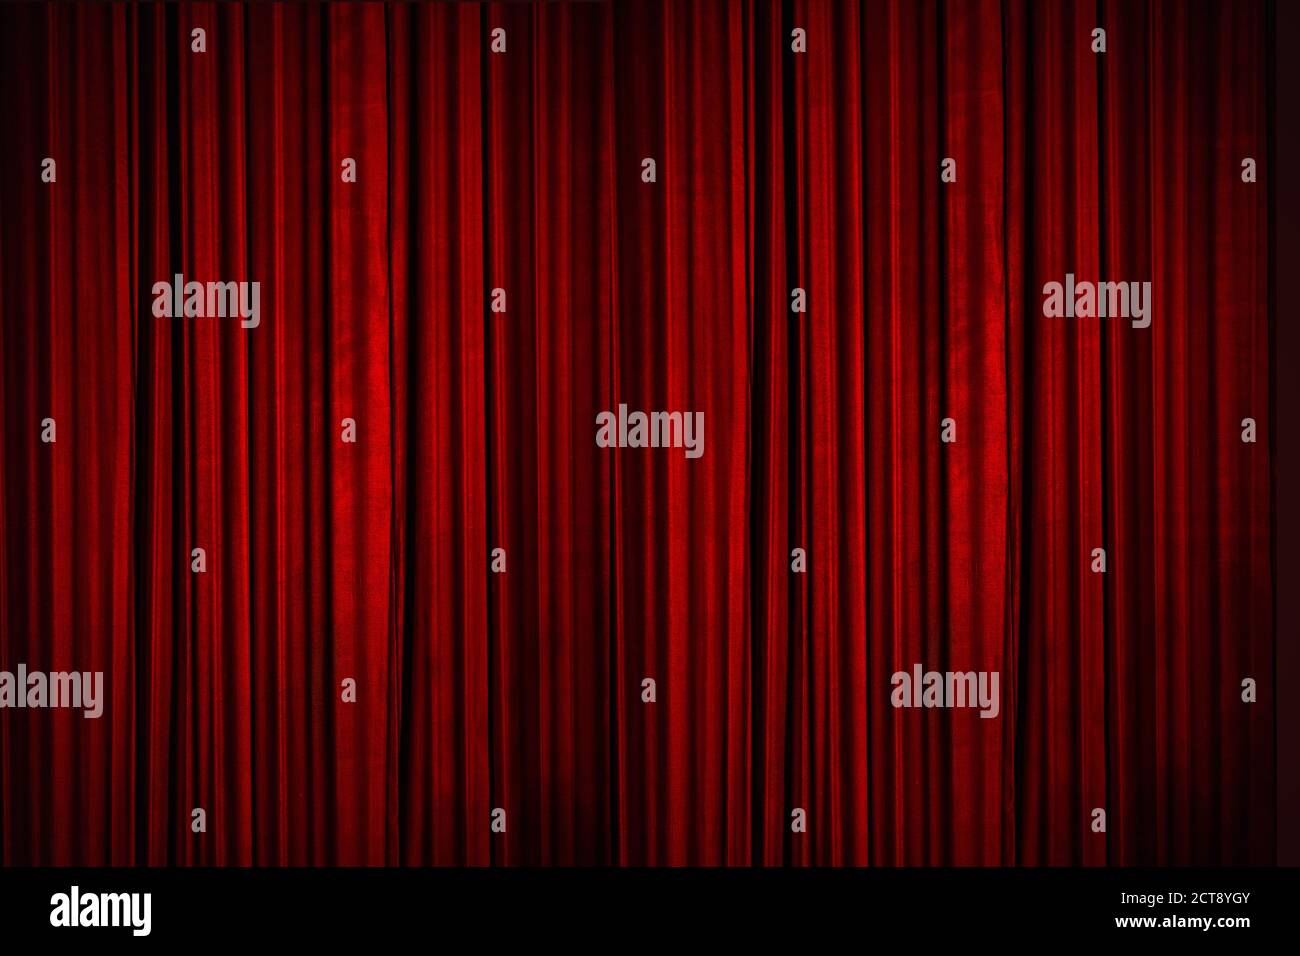 Schöne rote Vorhänge der Bühne beleuchtet mit Bühnenbeleuchtung, Momente bevor die Vorhänge ging bis, um die Bühne zu offenbaren Stockfoto